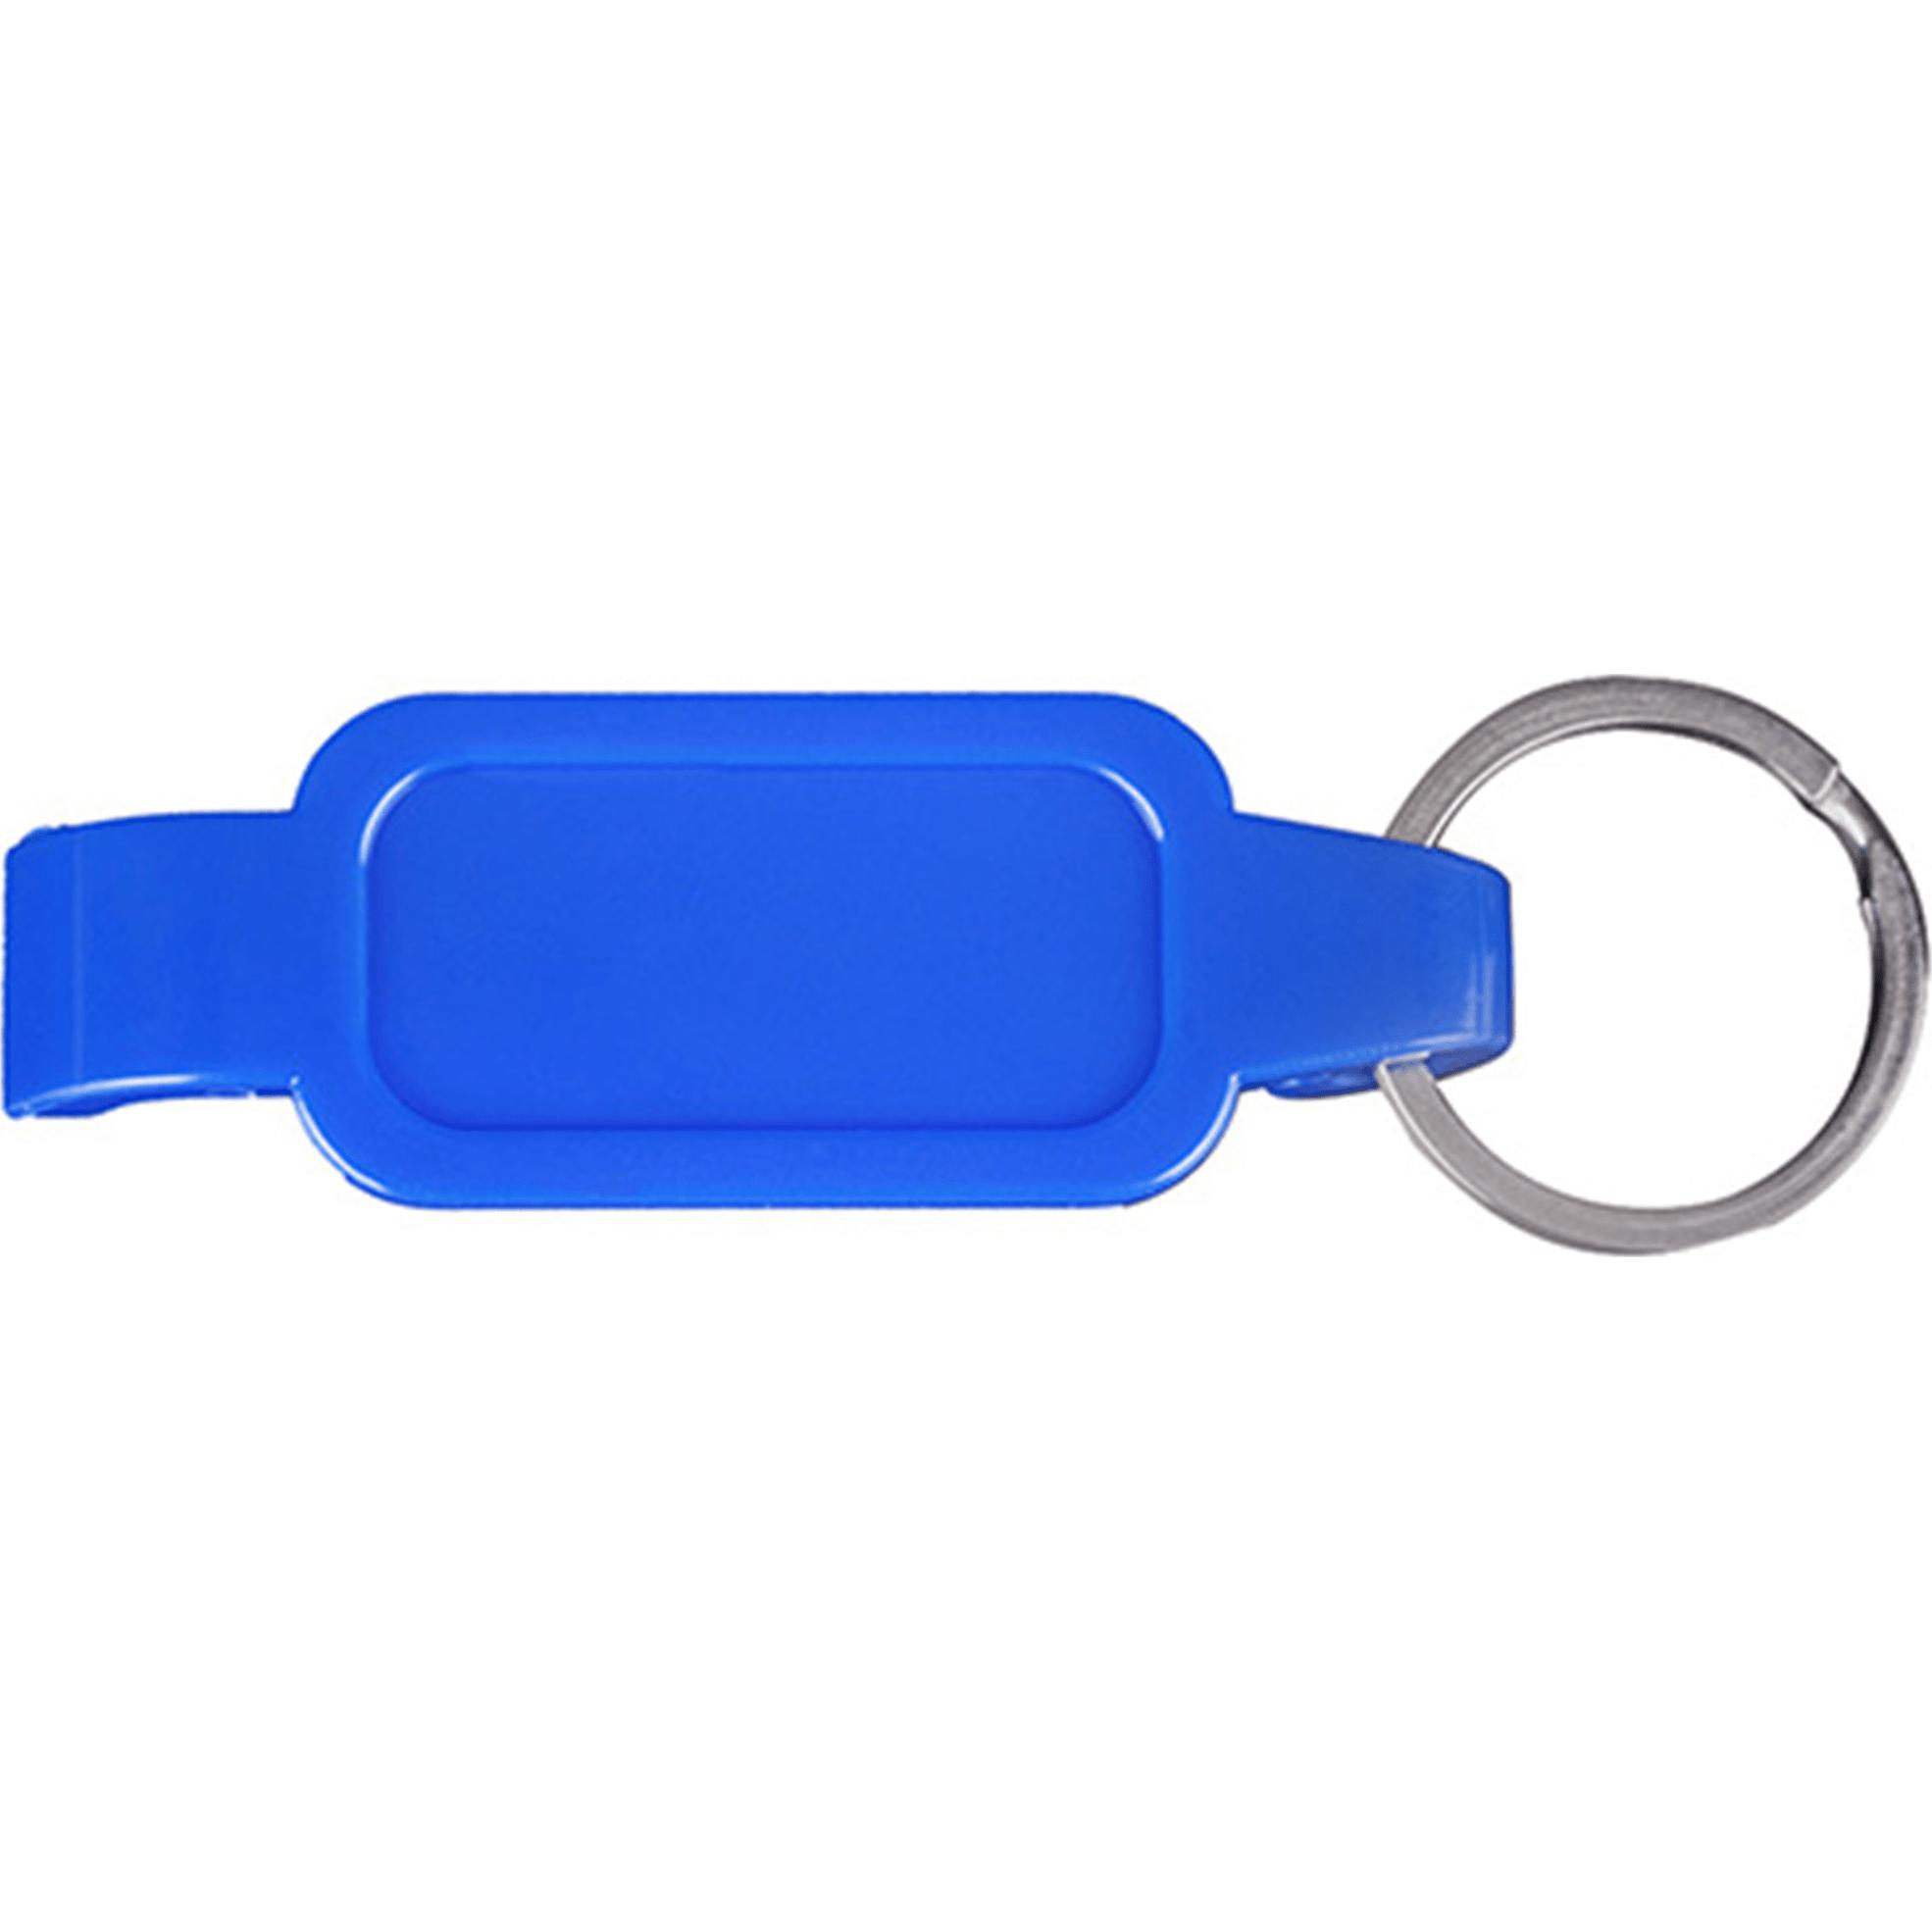 帶金屬開口環鑰匙扣的藍色開瓶器